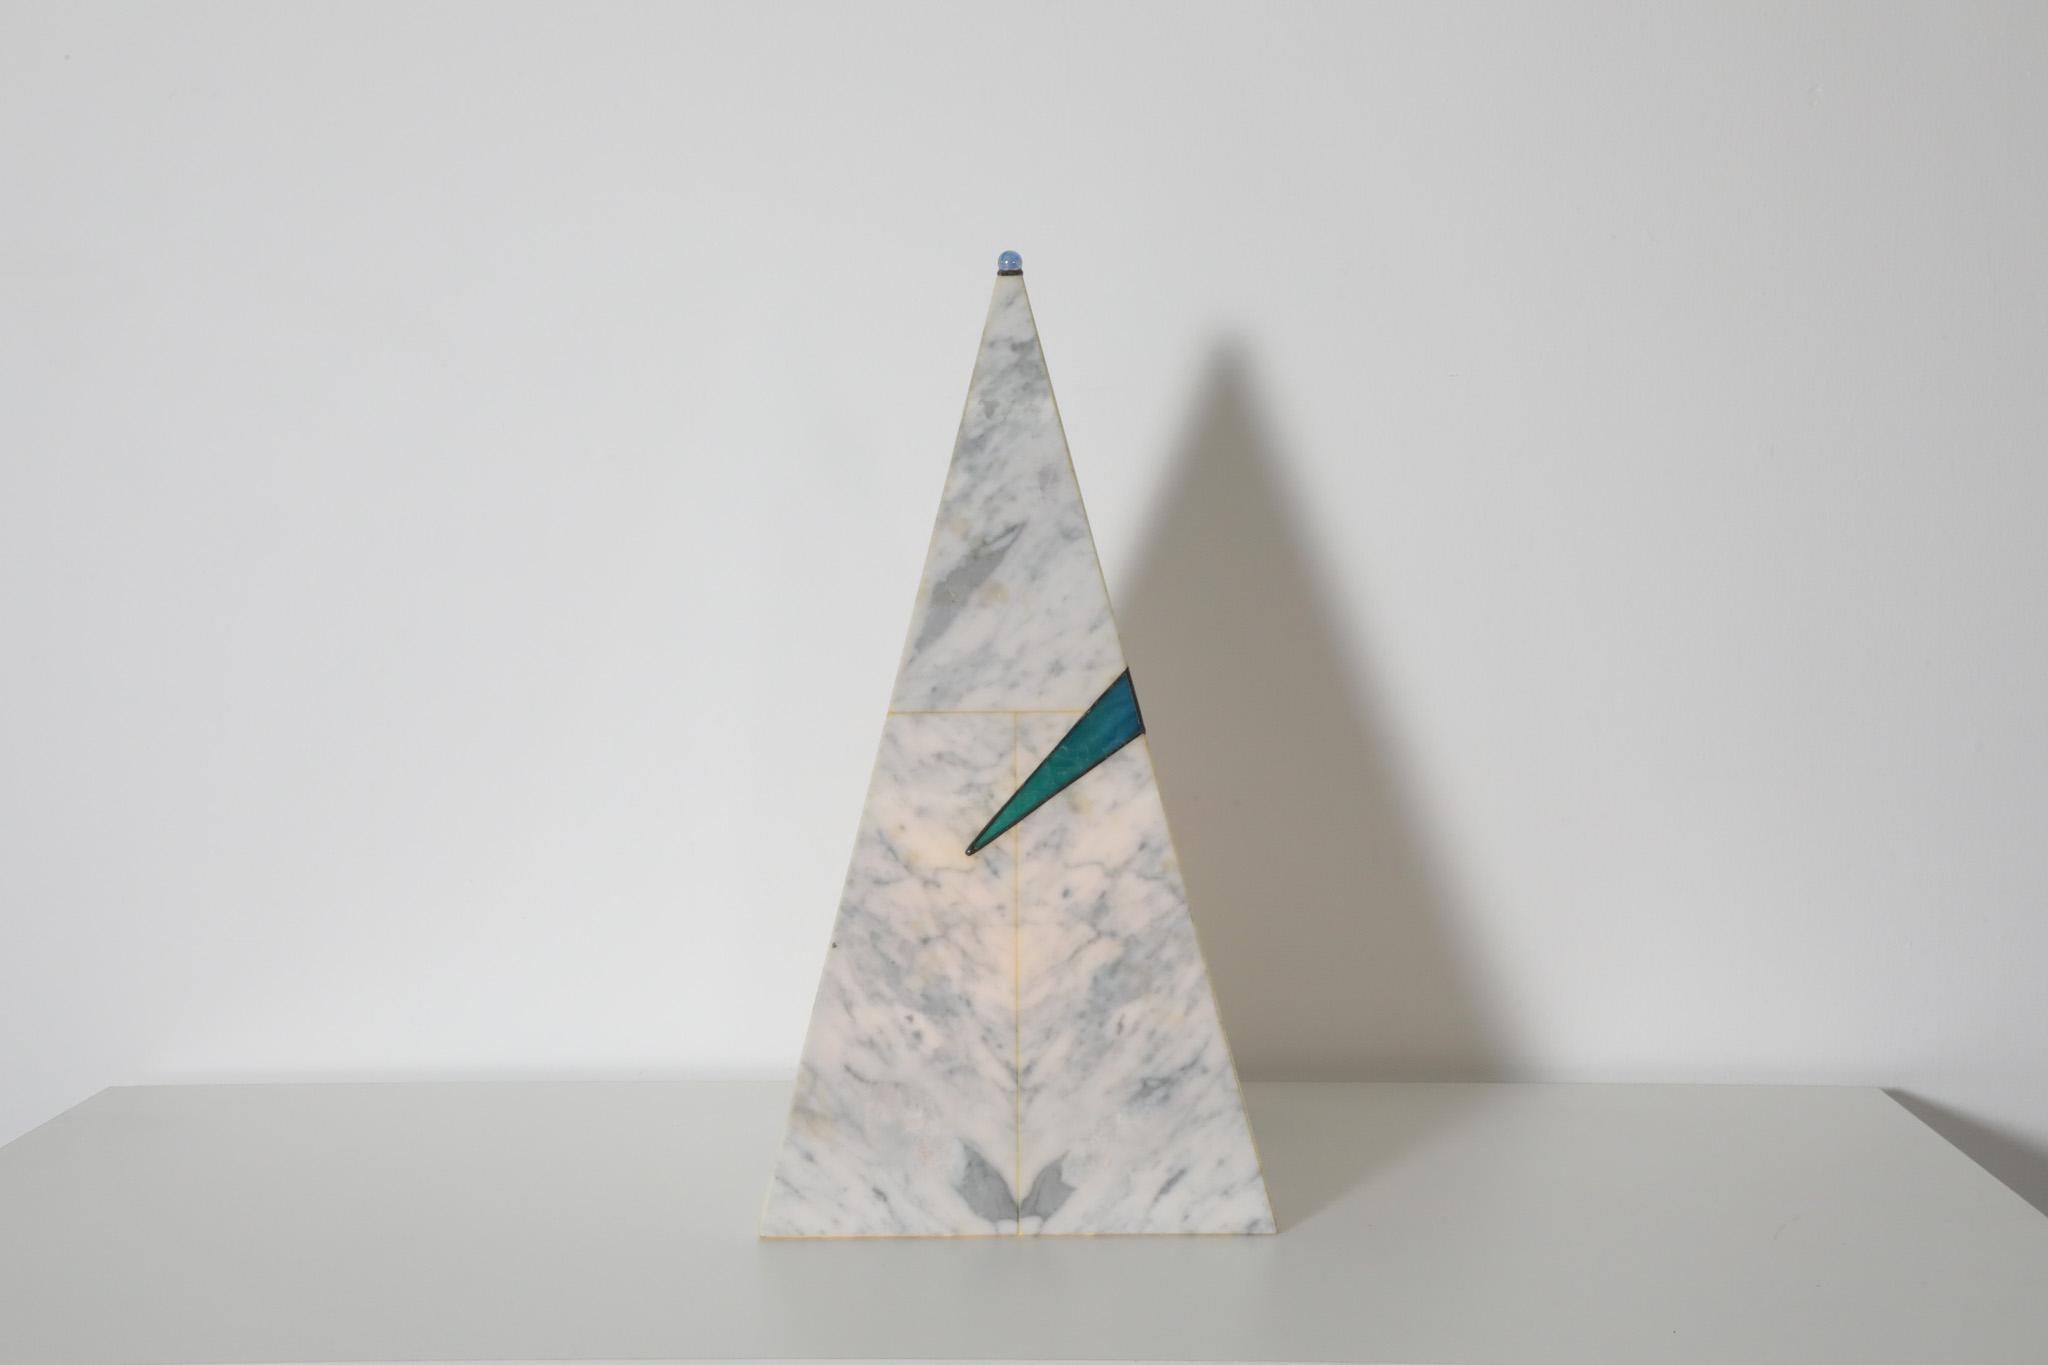 Lampe de table pyramidale de style Whiting en faux marbre blanc et gris avec une petite bille de verre sur la pointe de la pyramide et un faux vitrail bleu au centre. La lampe émet une faible lueur. En état d'origine avec une usure visible, y